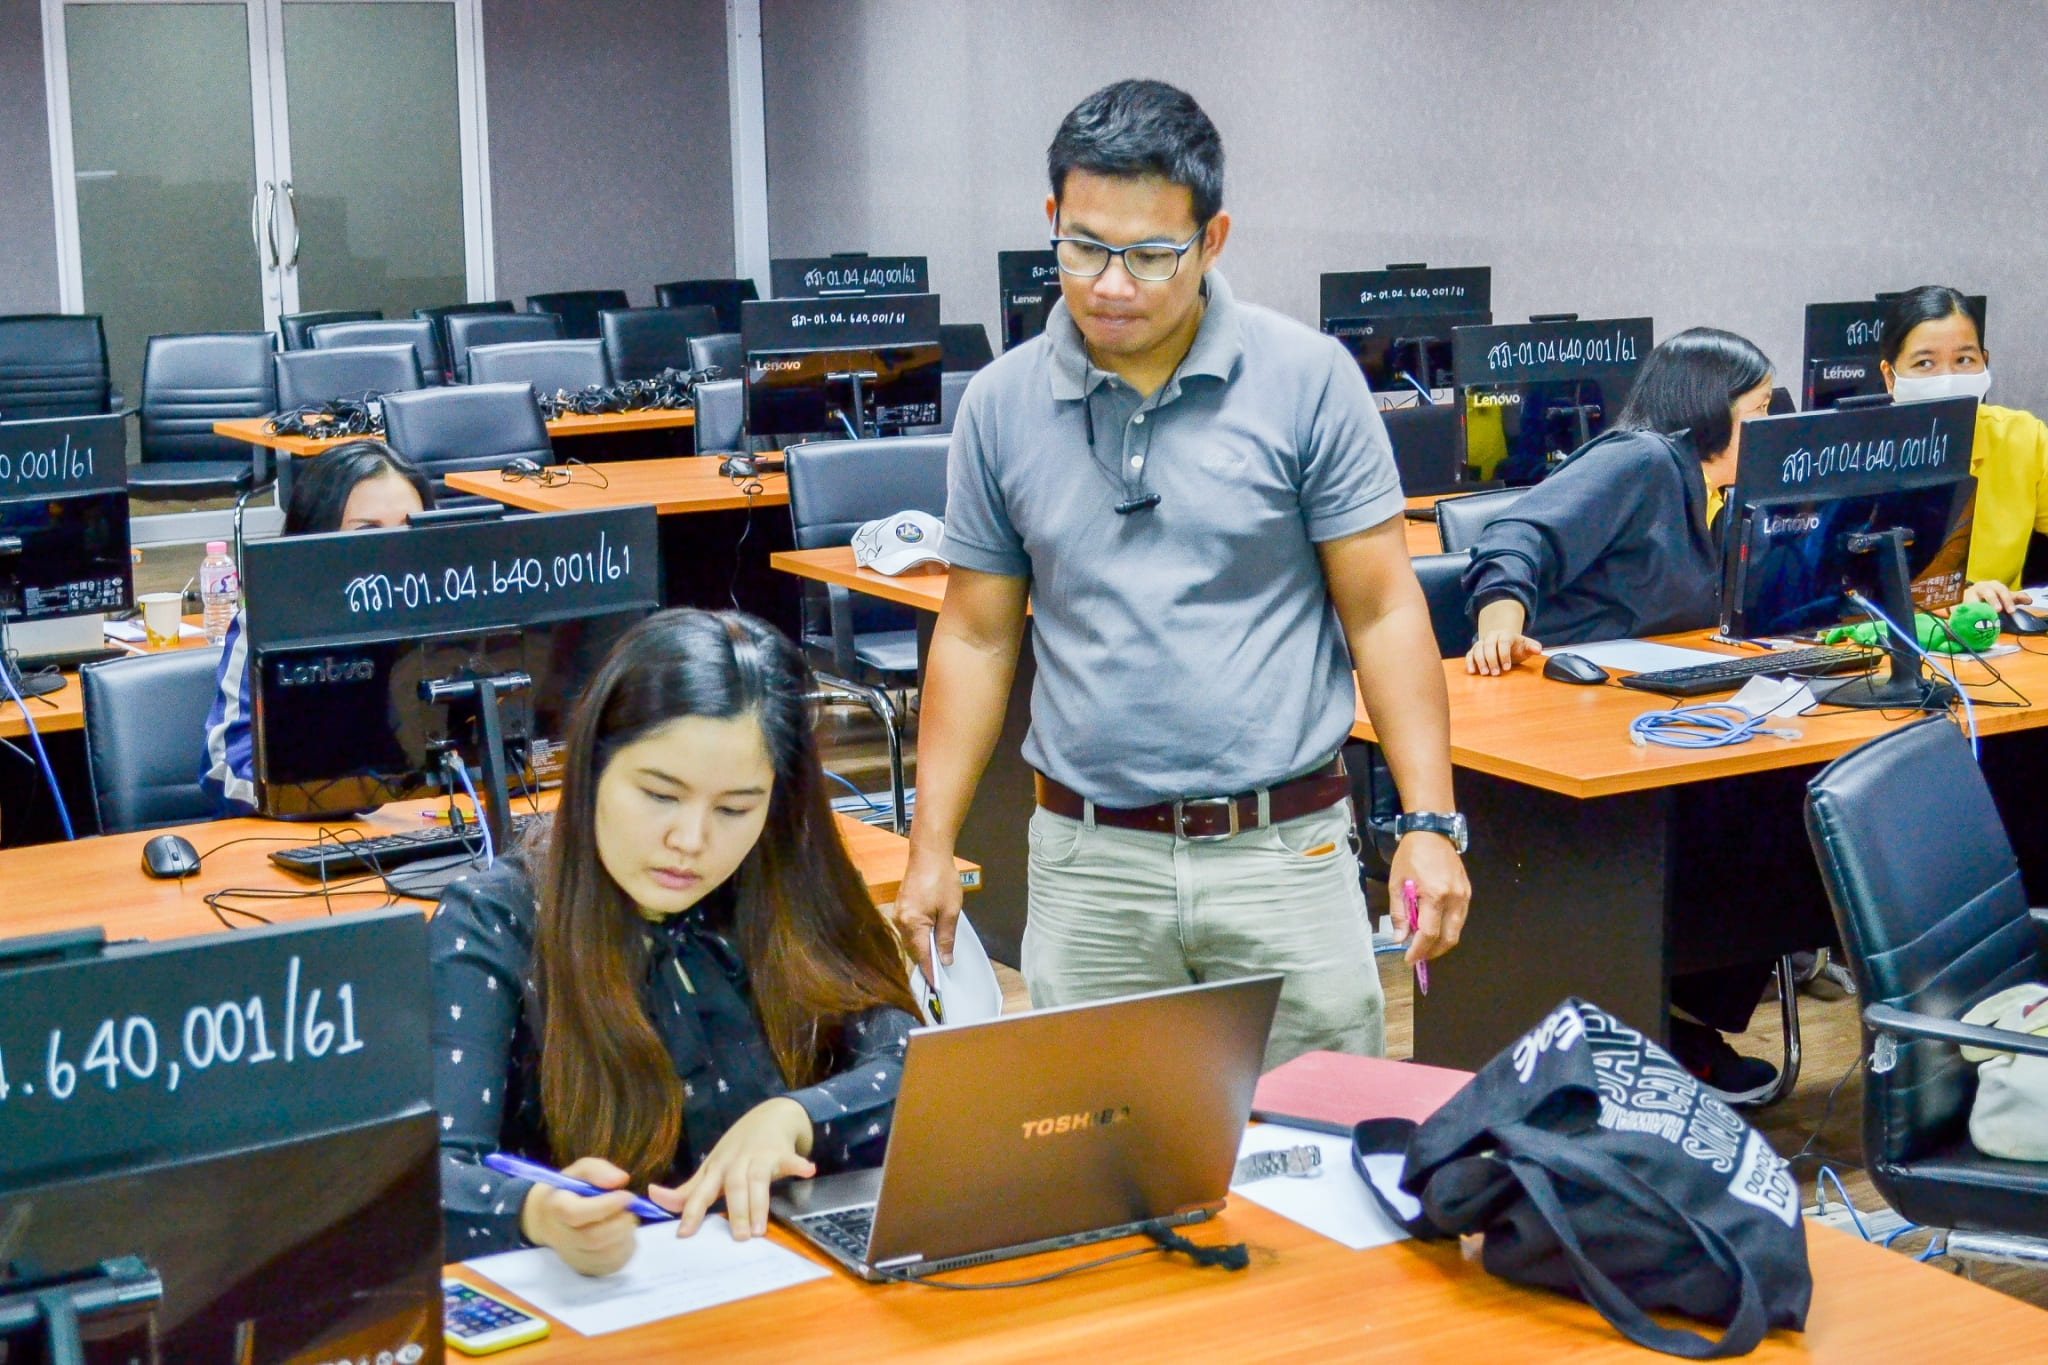 อบรมเชิงปฏิบัติการการจัดการเรียนการสอนผ่านระบบออนไลน์ด้วยโปรแกรม Microsoft Teams , Google Meet , Google Classroom วิทยาลัยการบินนานาชาติ มหาวิทยาลัยนครพนม